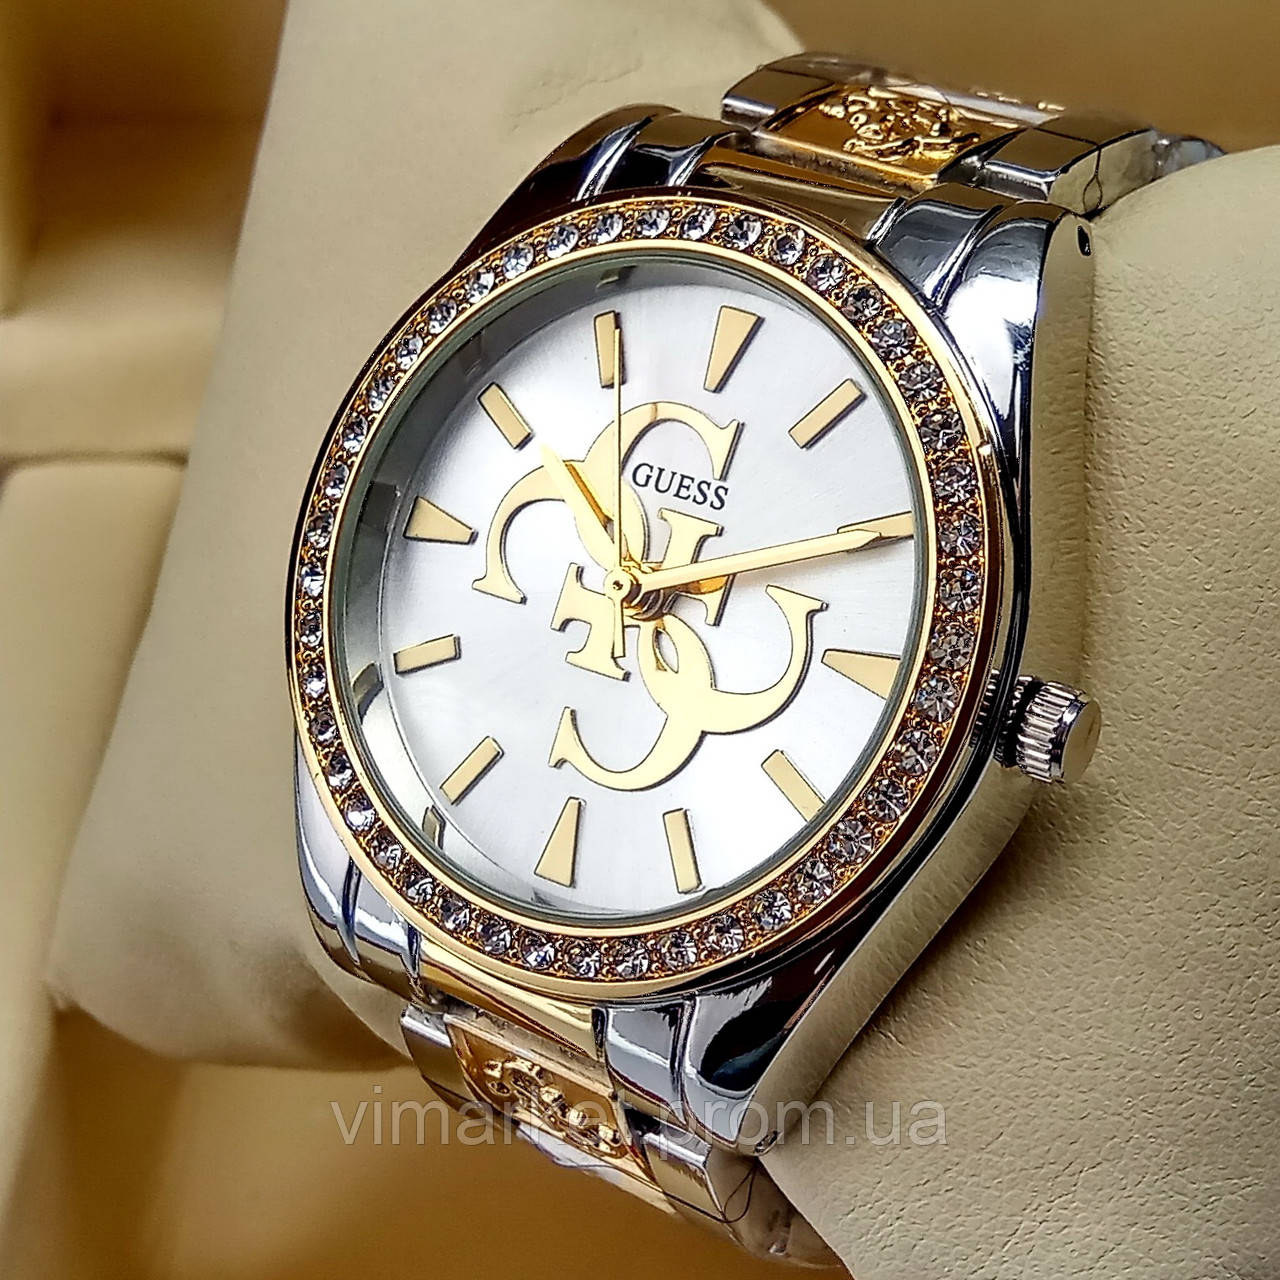 Жіночий наручний годинник Guess на металевому браслеті комбіноване золото срібло, сріблястий циферблат